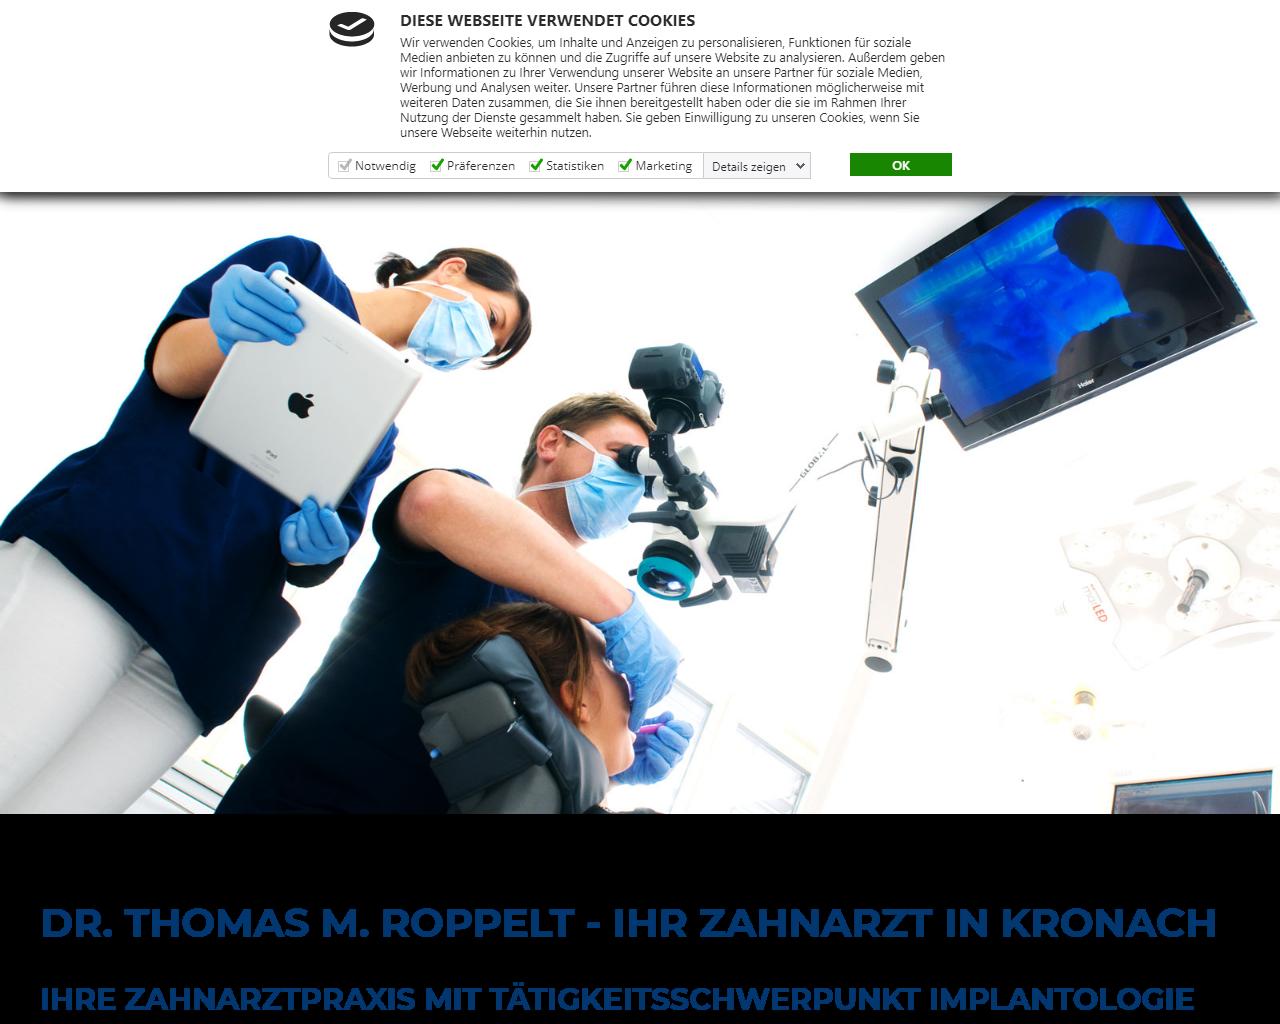 Herr Dr. Thomas M. Roppelt